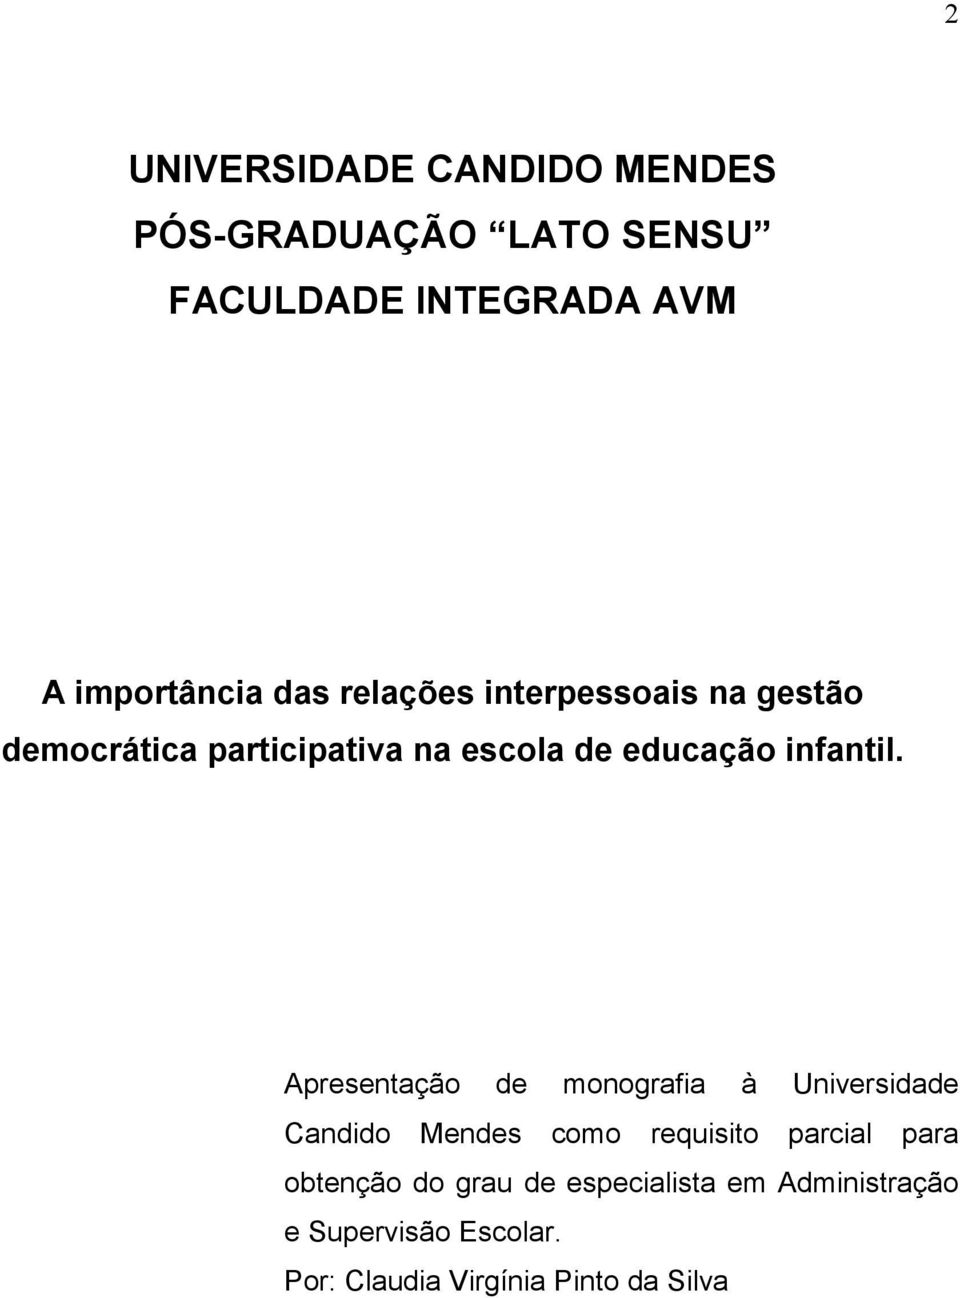 Apresentação de monografia à Universidade Candido Mendes como requisito parcial para obtenção